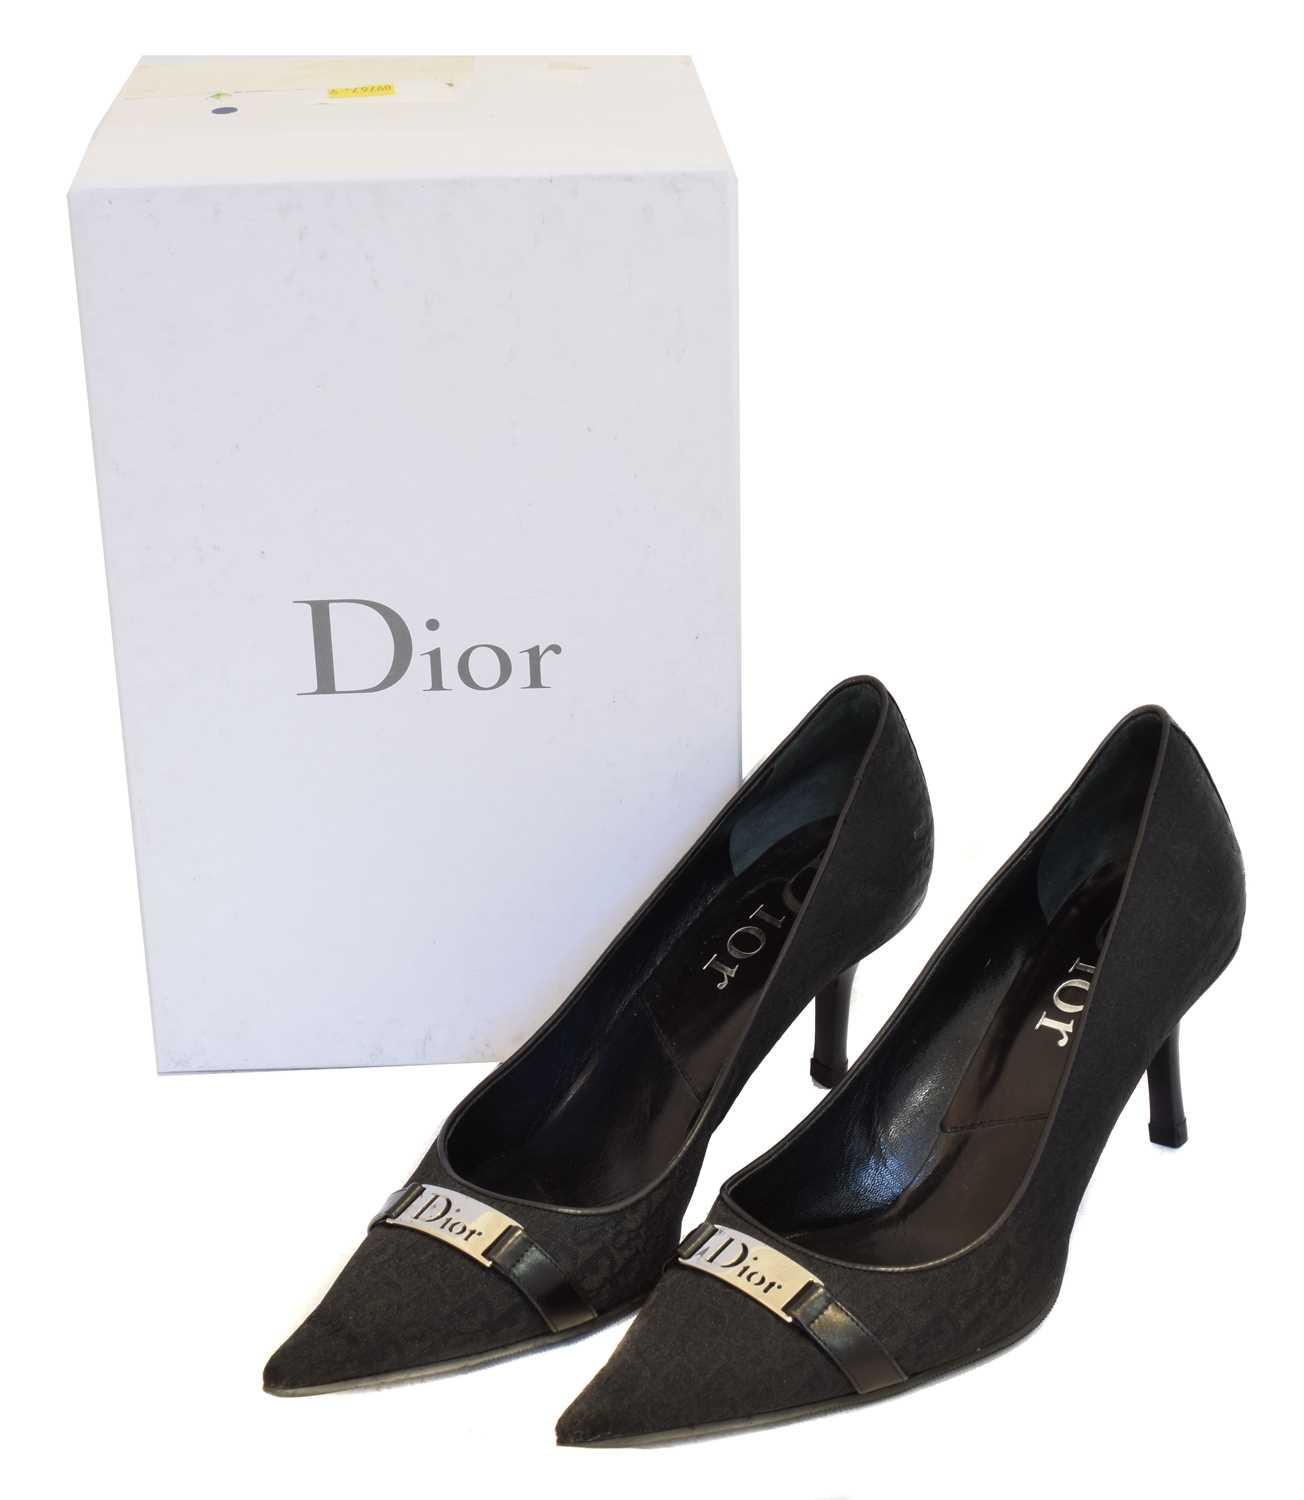 Lot 170 - A pair of Dior black logo heels